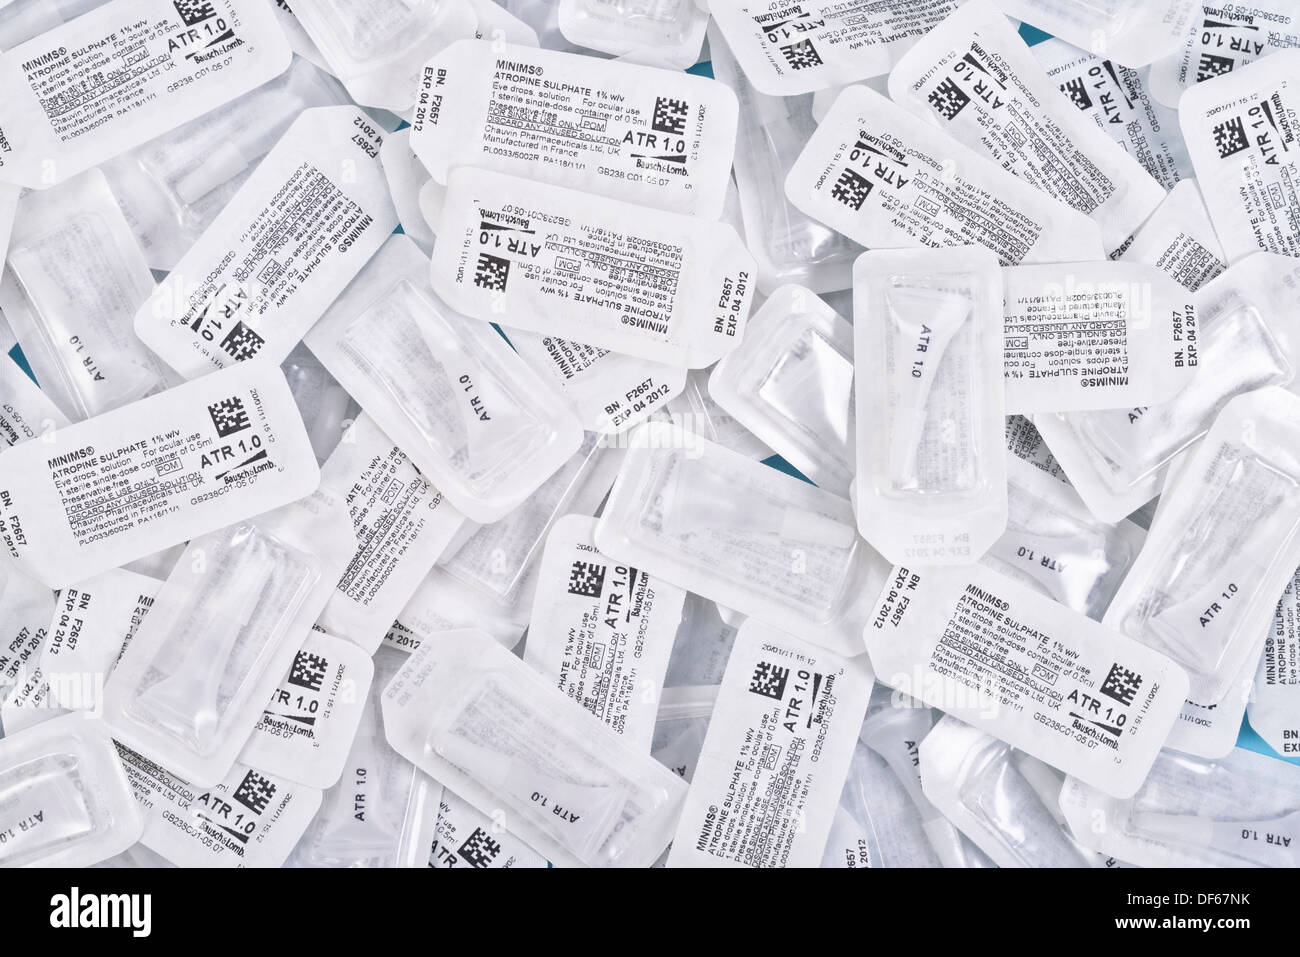 Atropine eye drops capsules individual dose pack Stock Photo